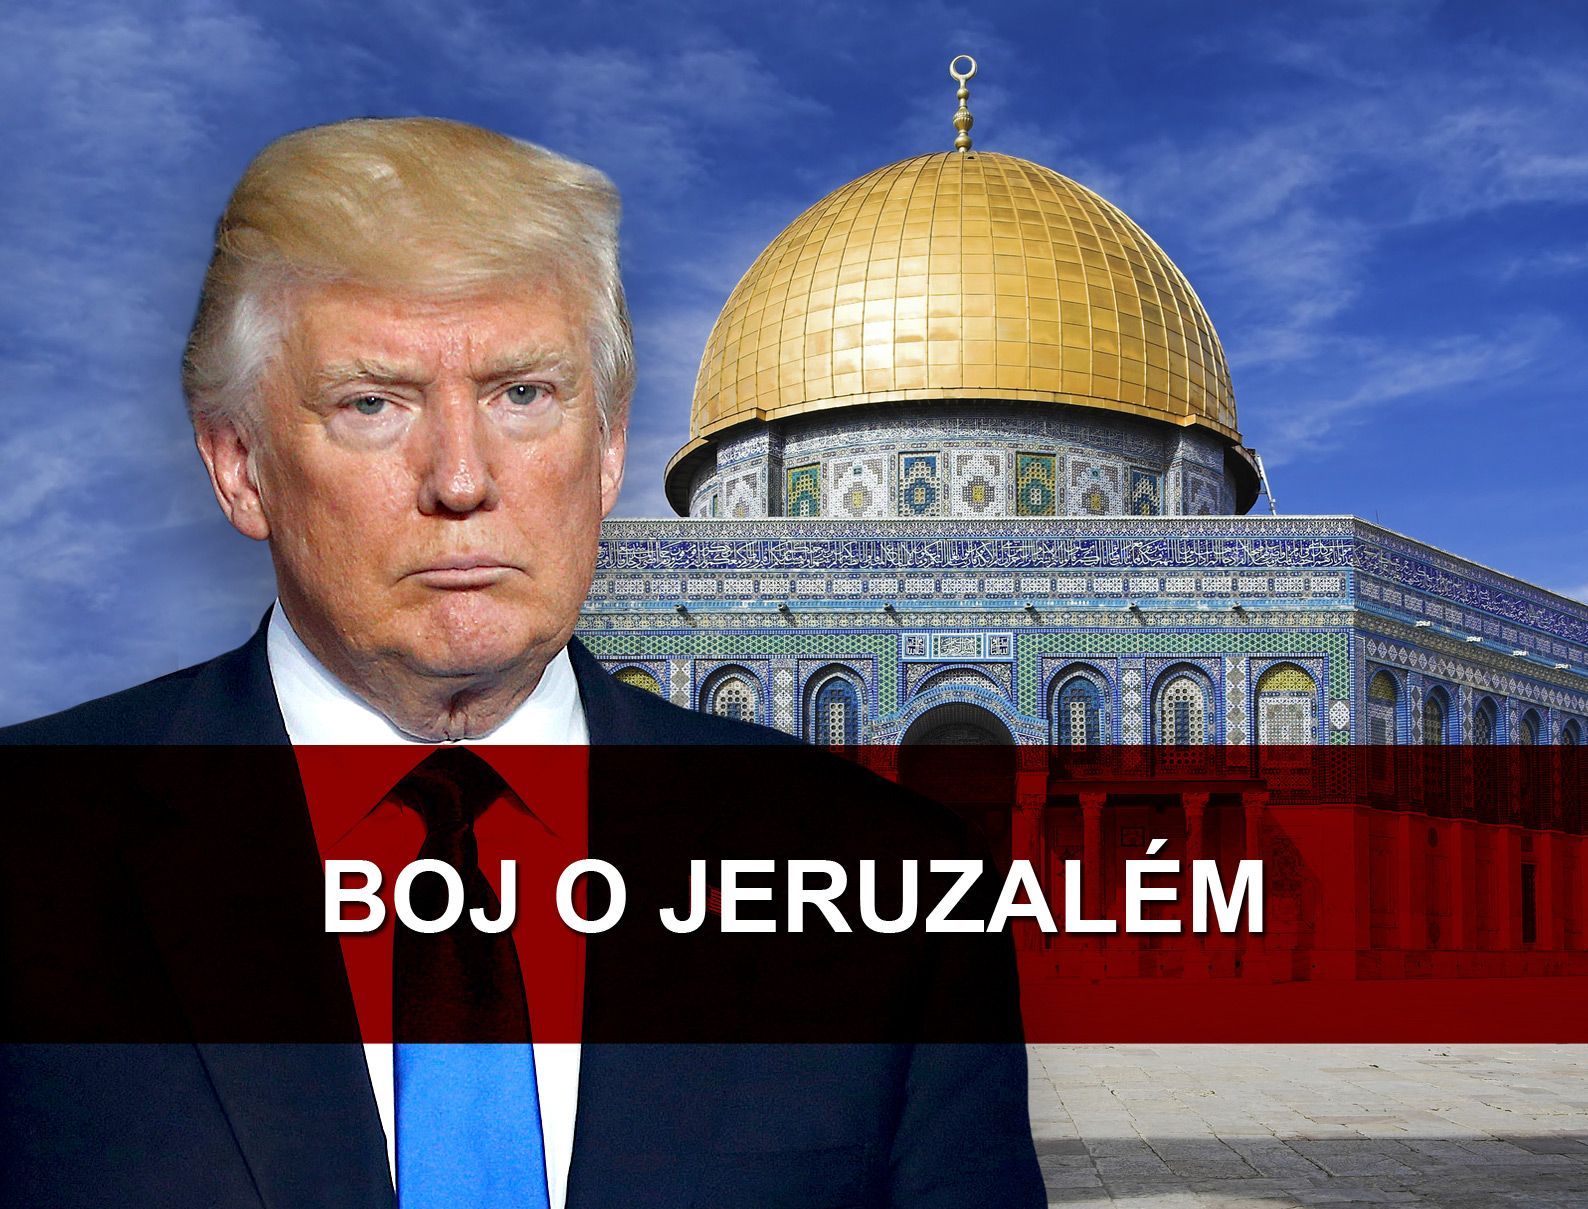 Trump - Boj o Jeruzalém - poutací obrázek